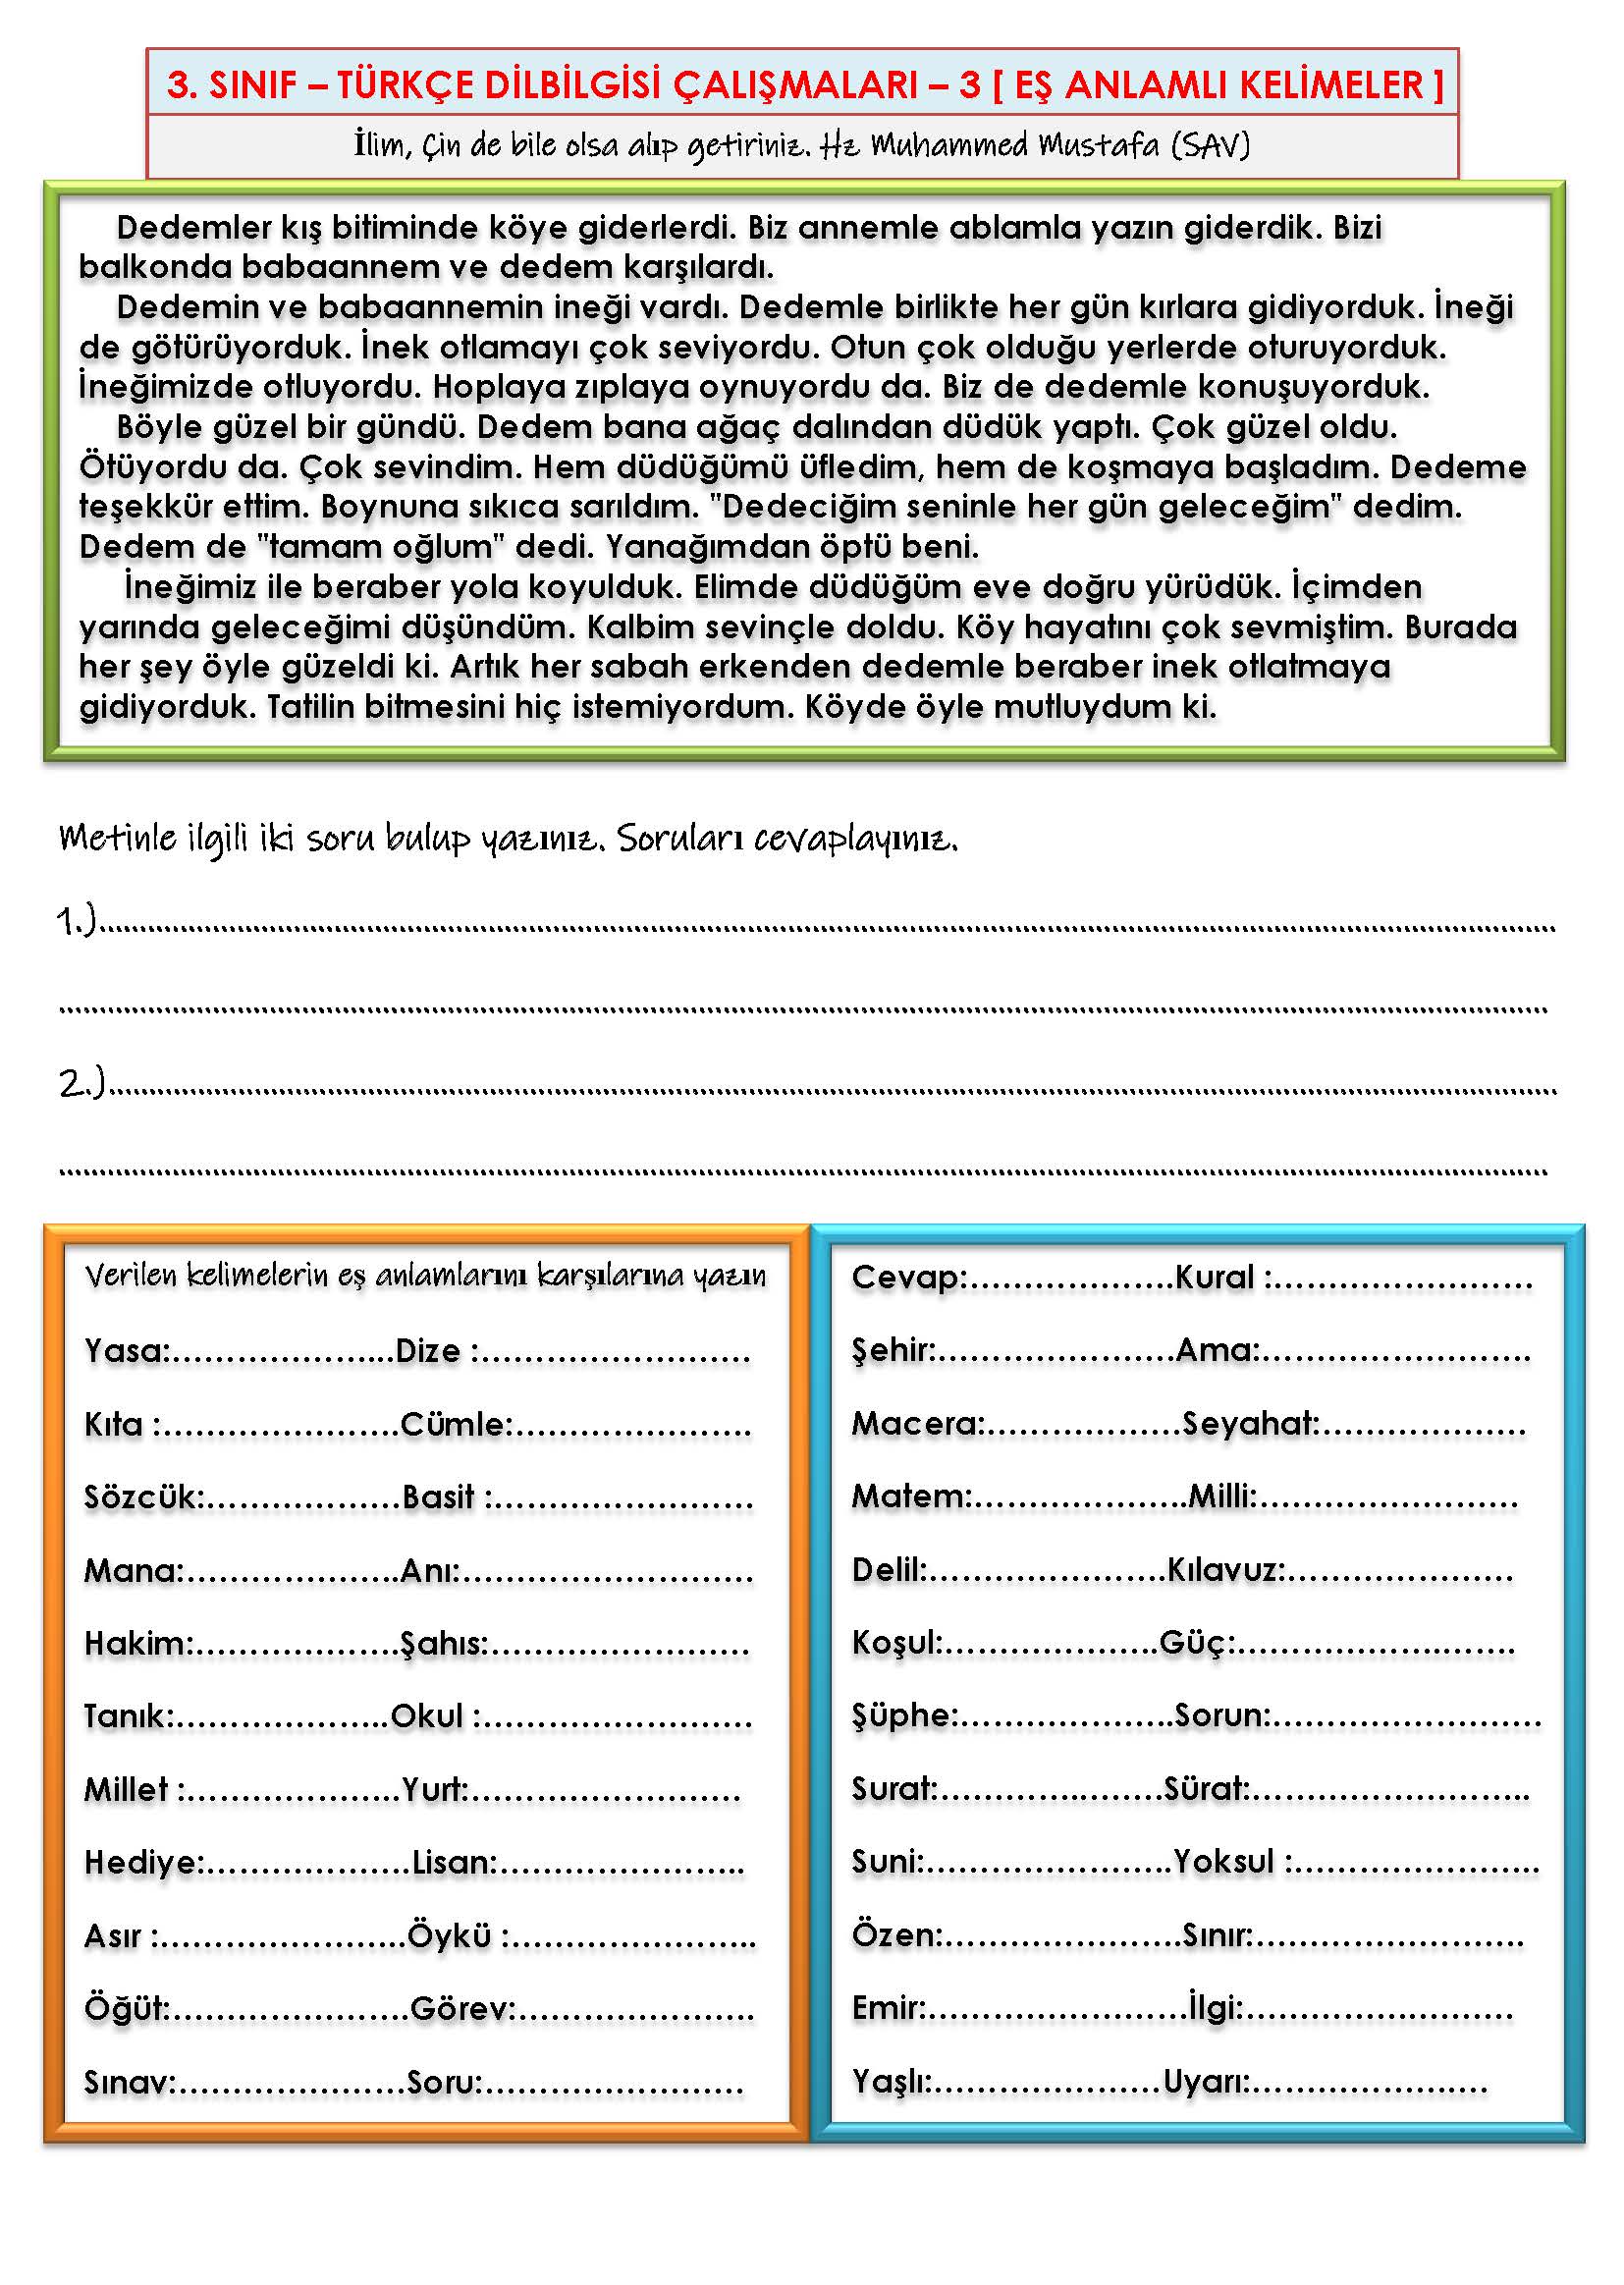 3. Sınıf - Türkçe - Dilbilgisi Çalışması - 3 ( Eş Anlamlı Kelimeler)